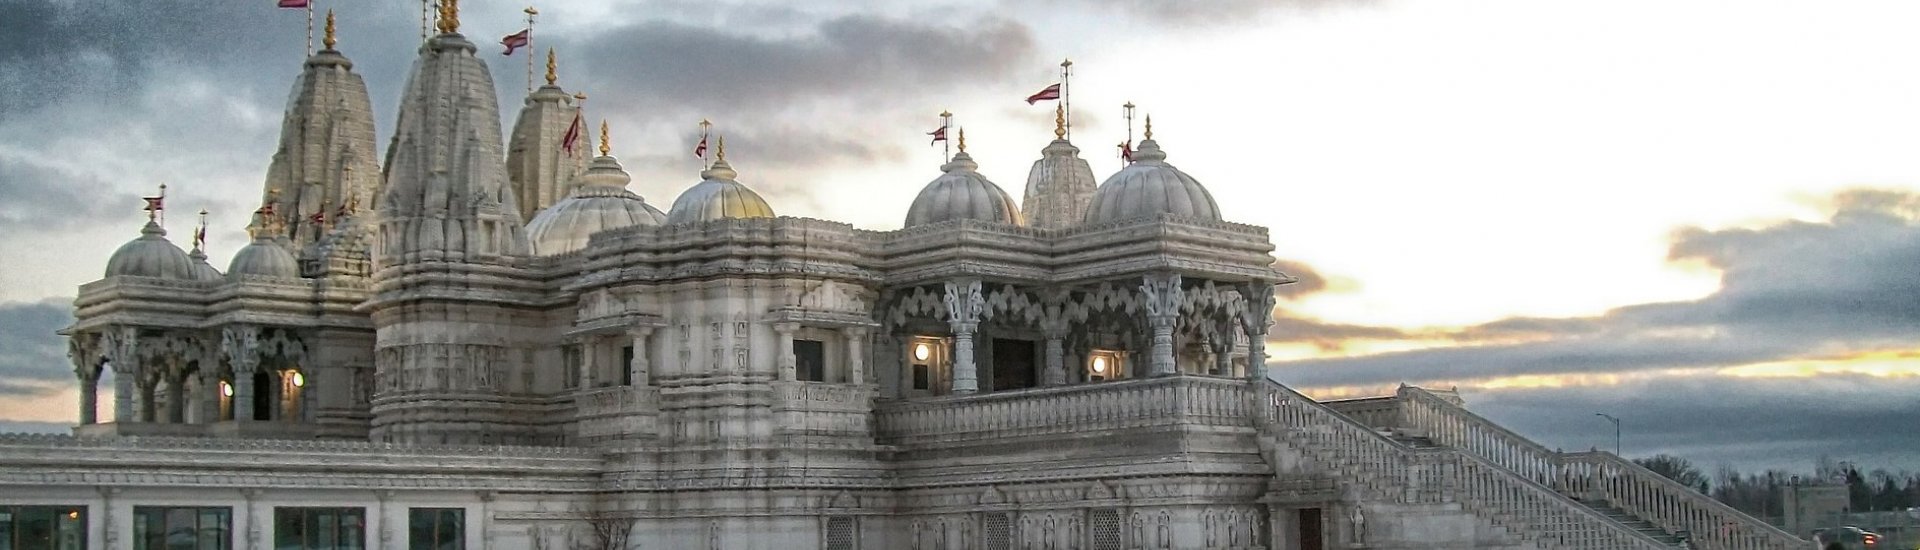 Shri Swaminaraya Mandir Temple